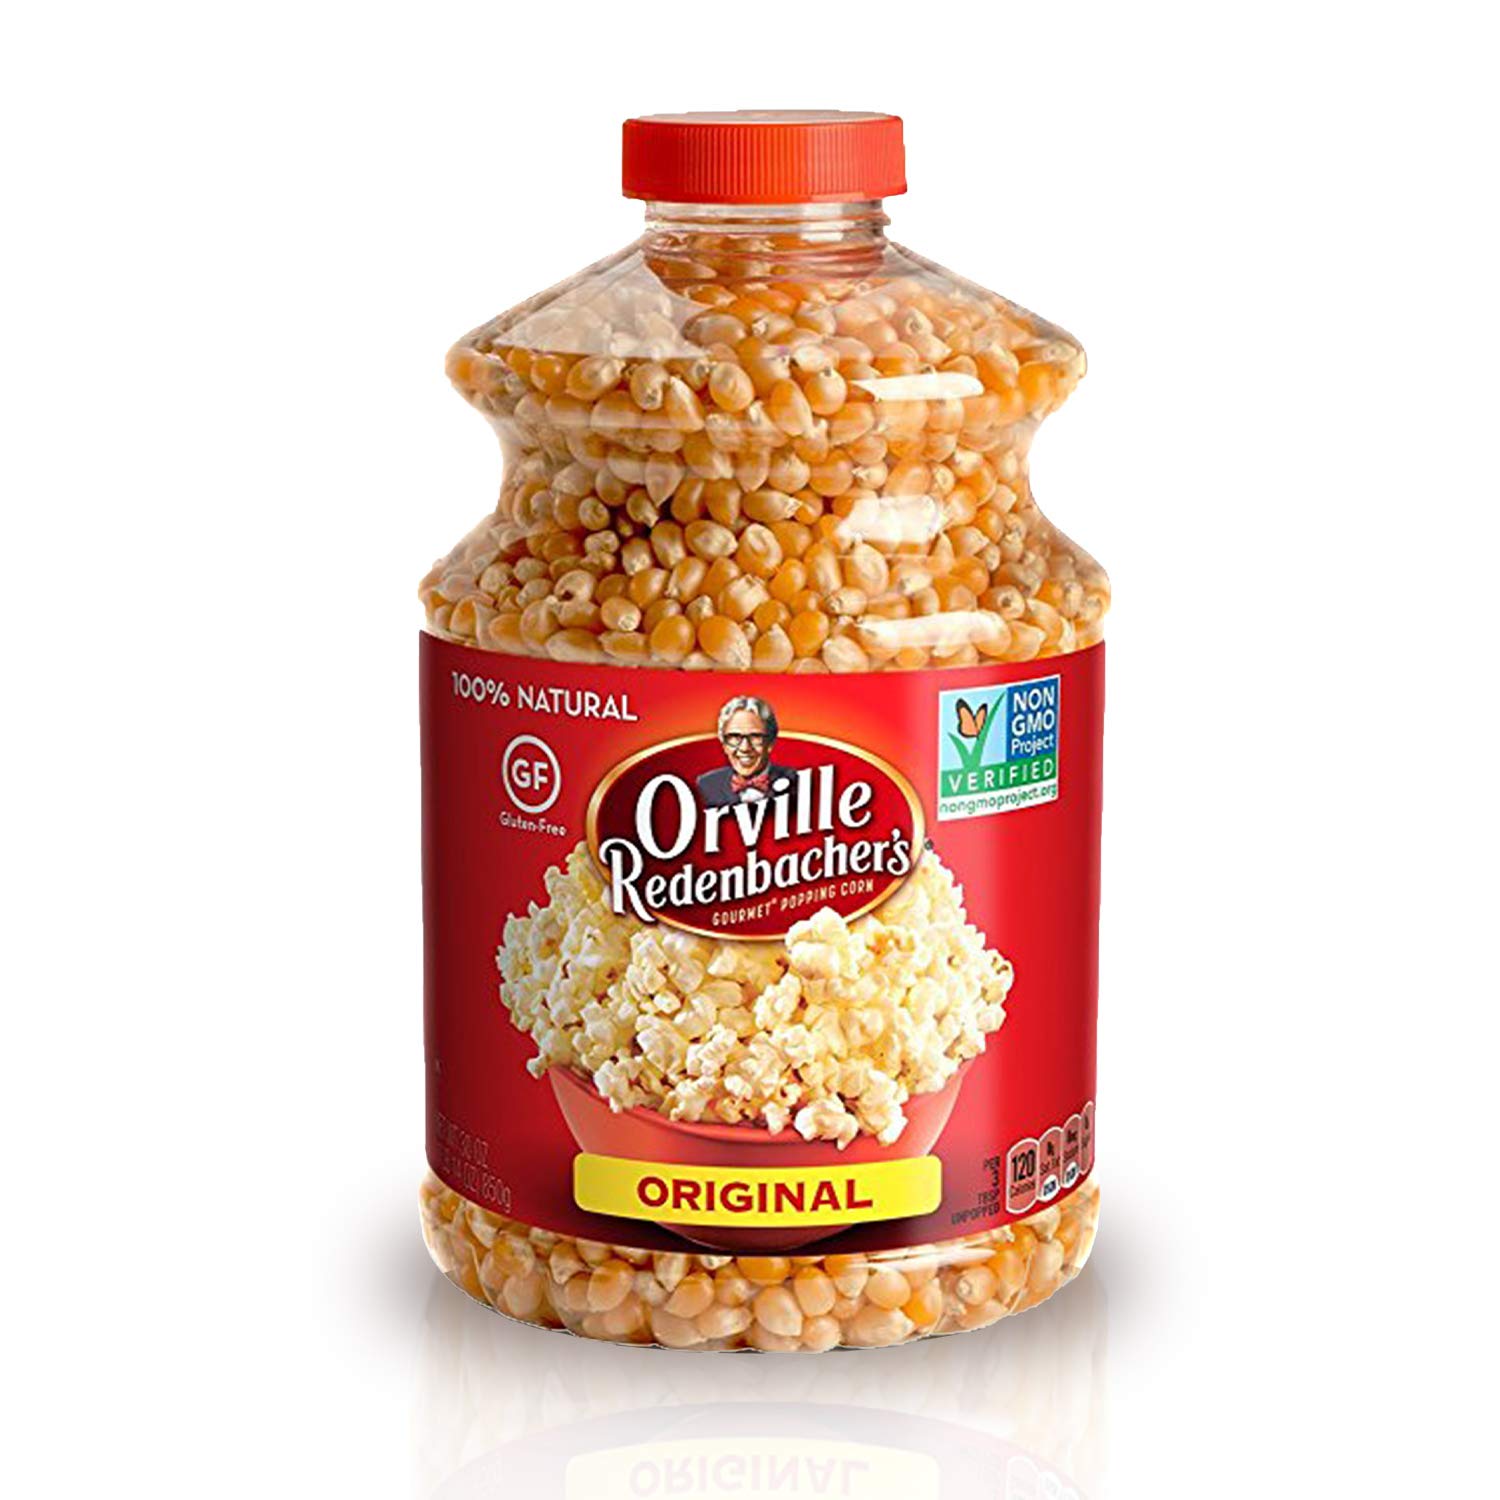 Orville Redenbacher's Presto Popcorn Popper/gourmet -  Denmark